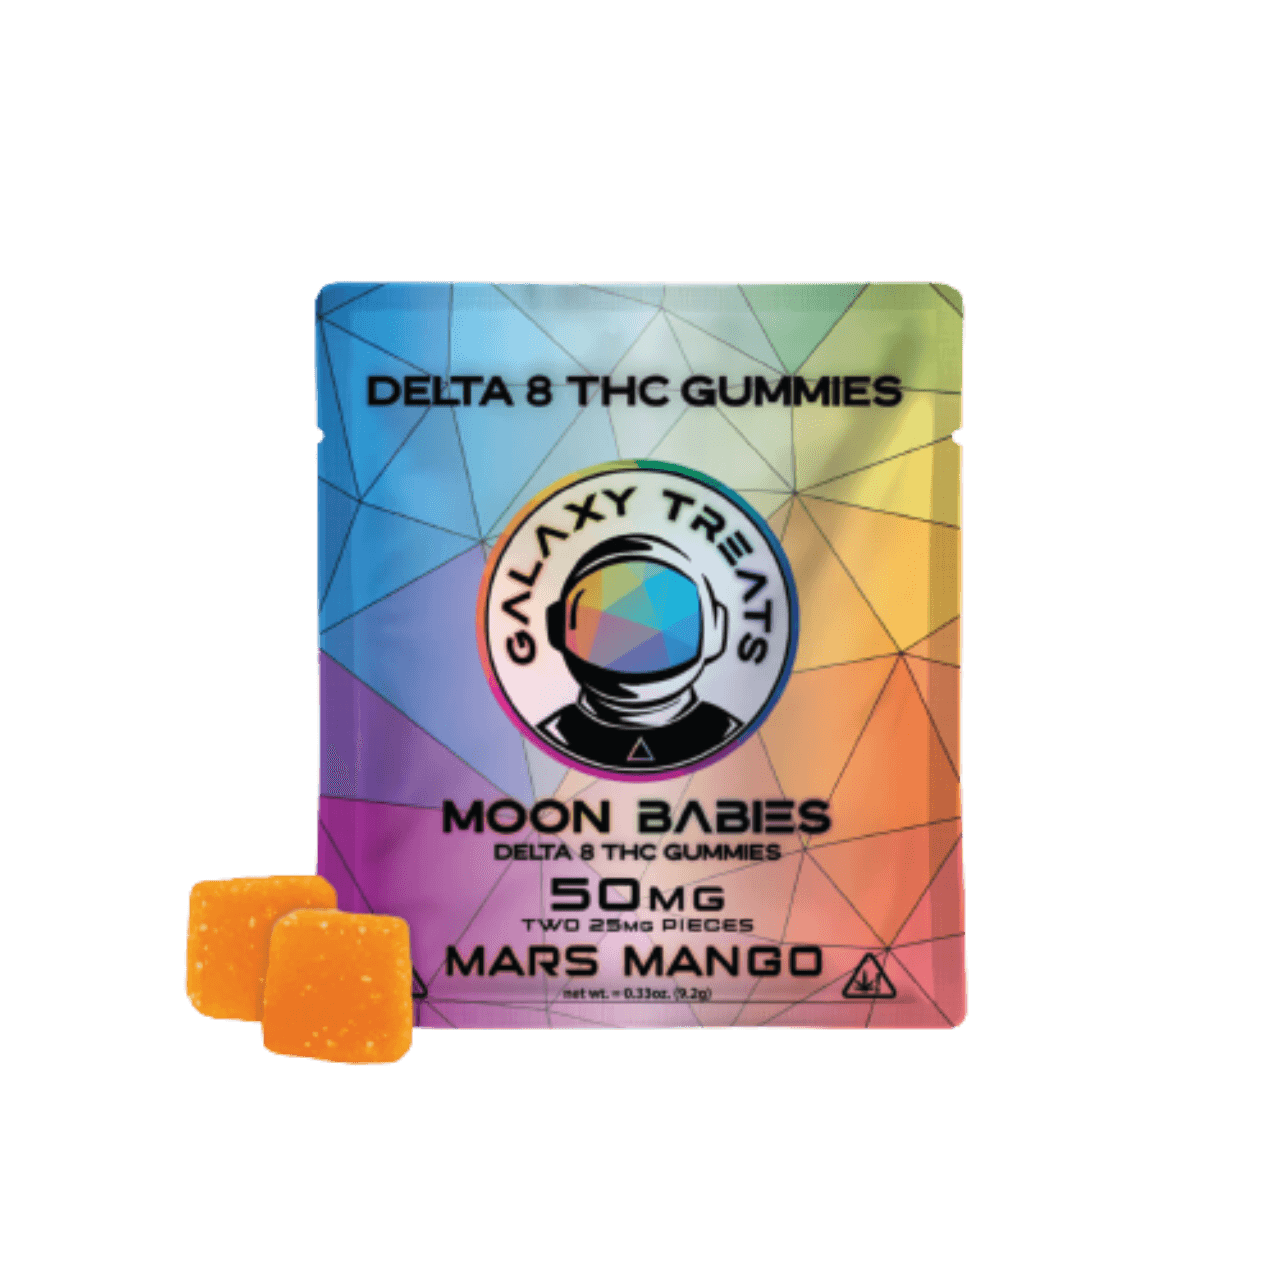 Moon Babies Delta 8 Gummies 50mg